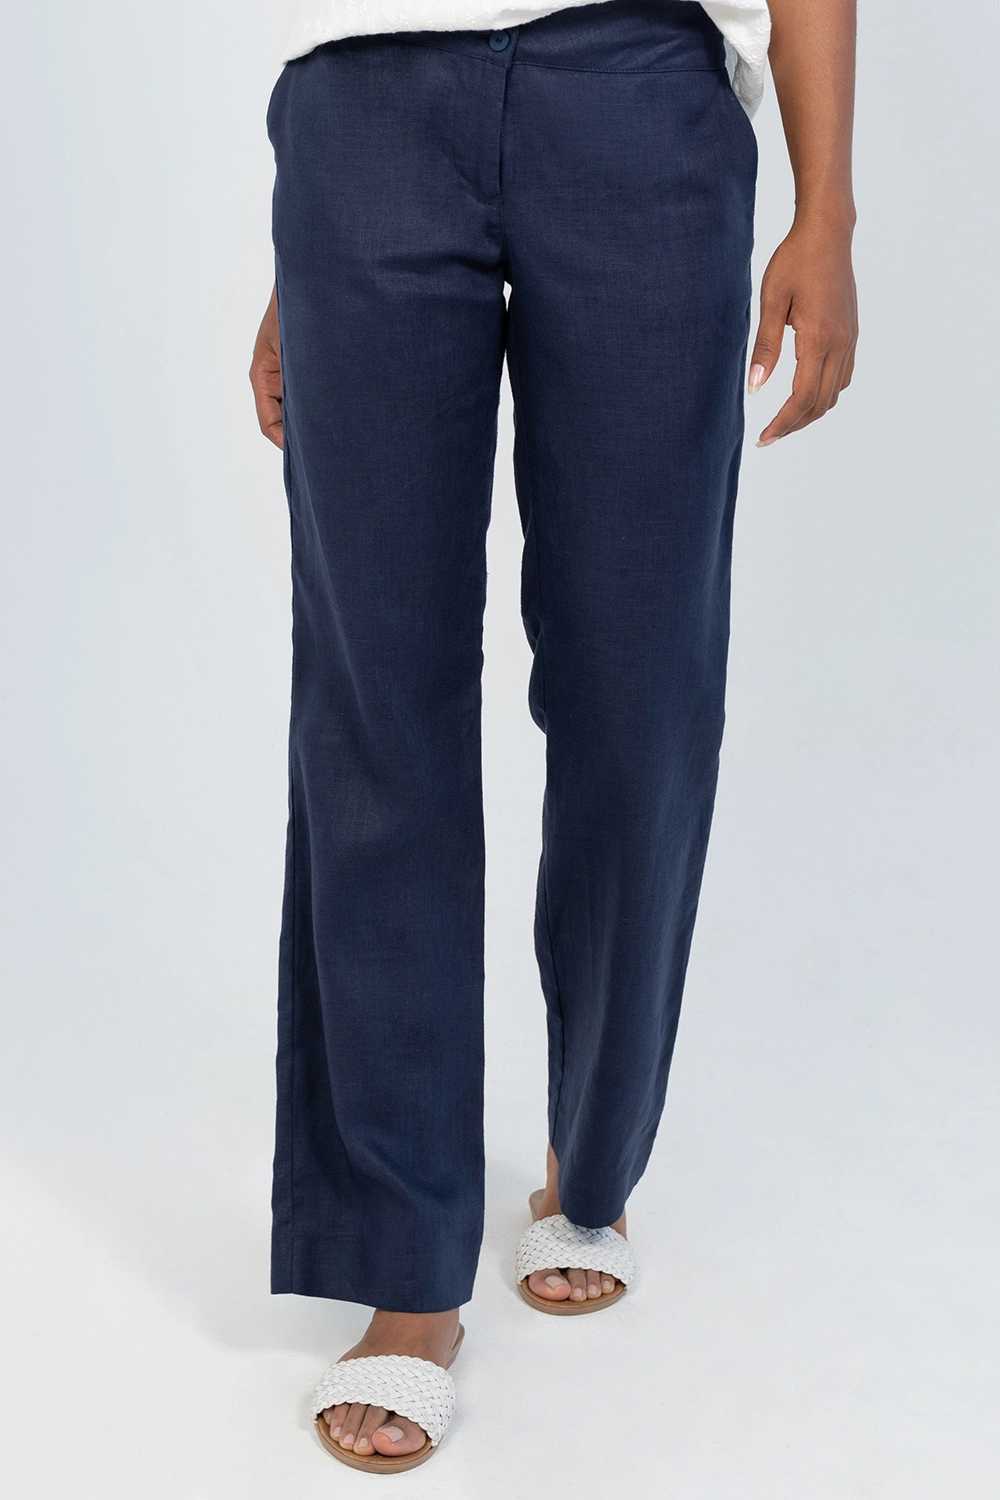 Pantalón básico slim en lino tiro medio. Azul oscuro talla 14